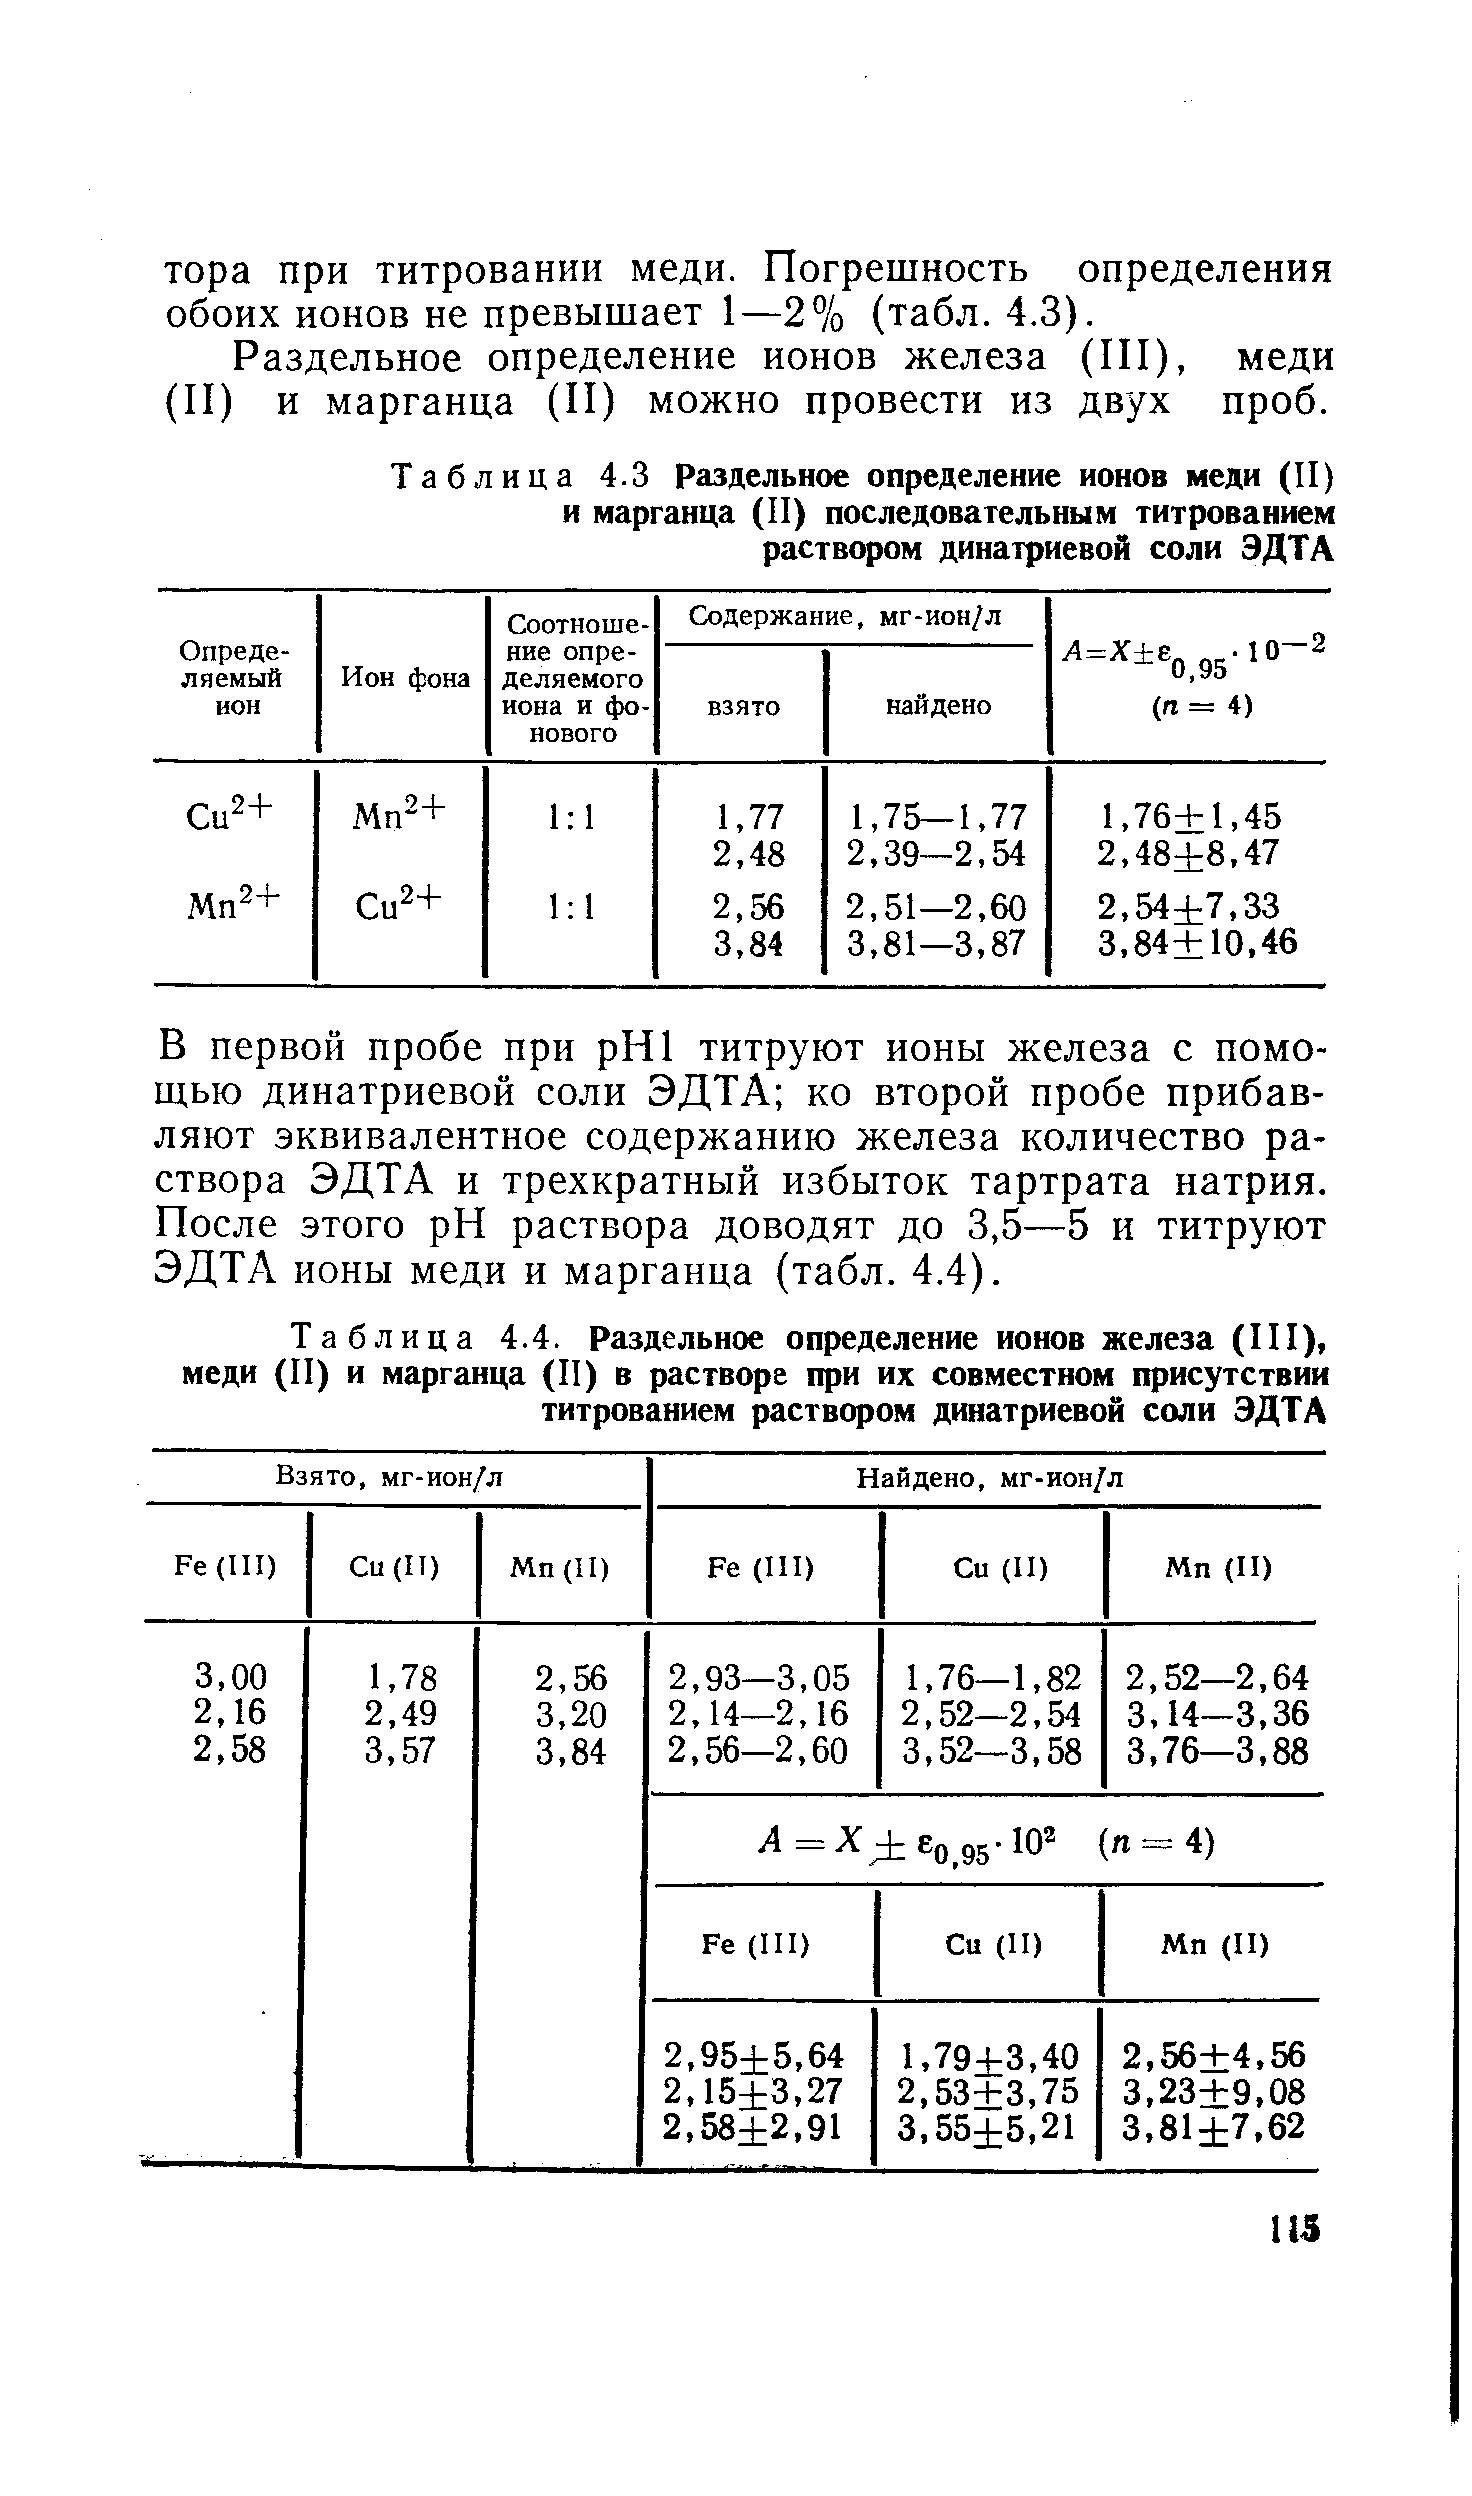 Раздельное определение ионов железа (П1), меди (II) и марганца (II) можно провести из двух проб.